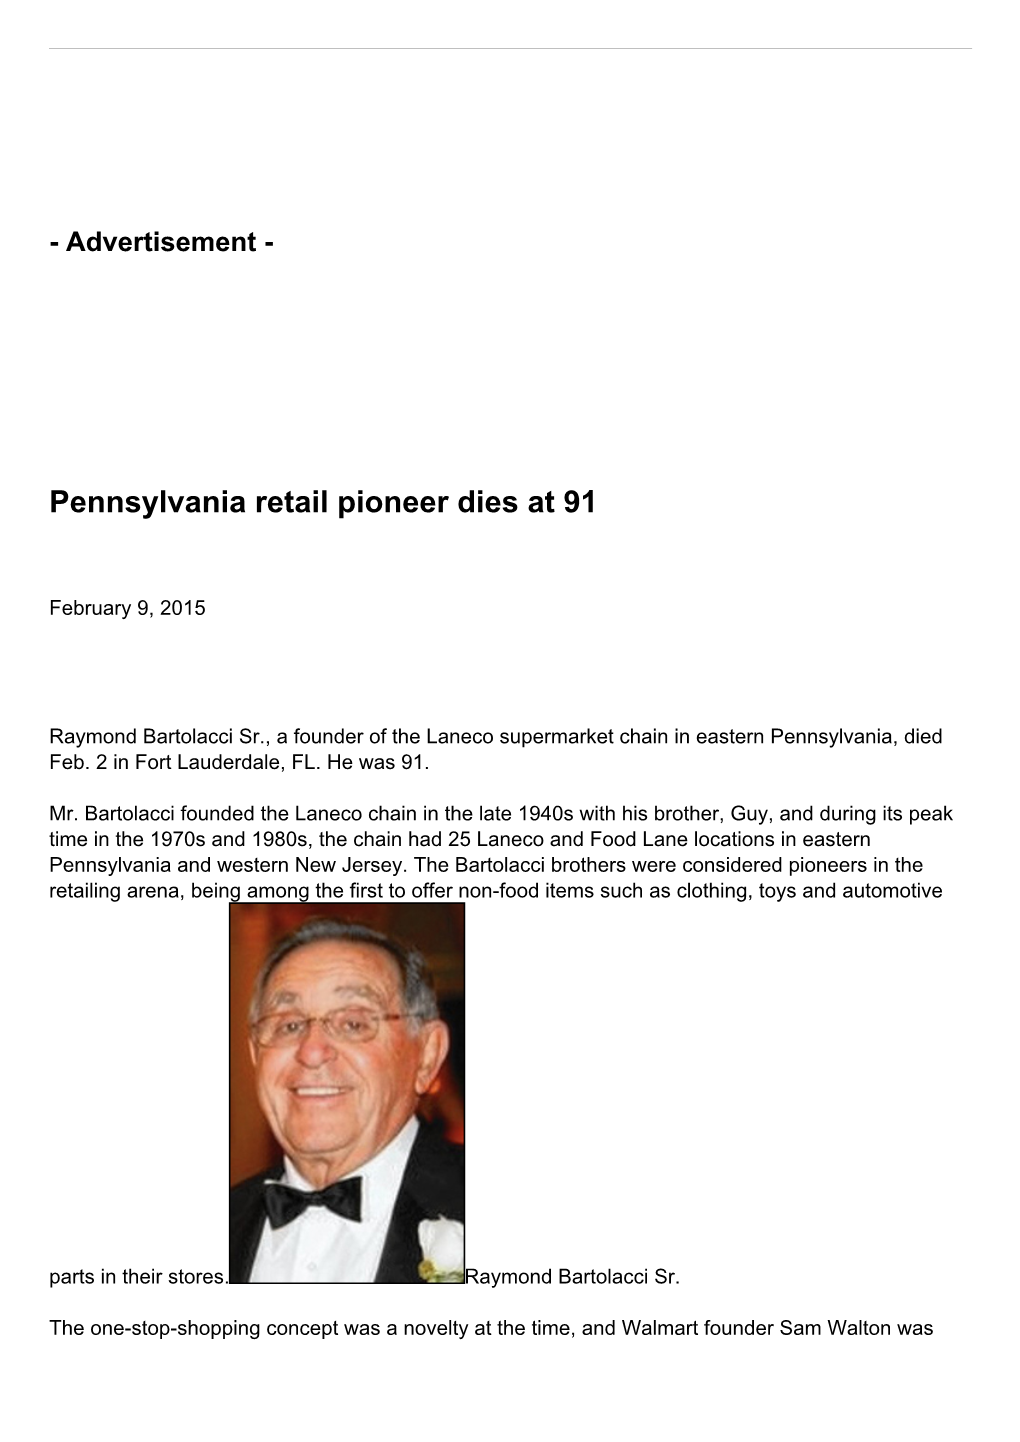 Pennsylvania Retail Pioneer Dies at 91